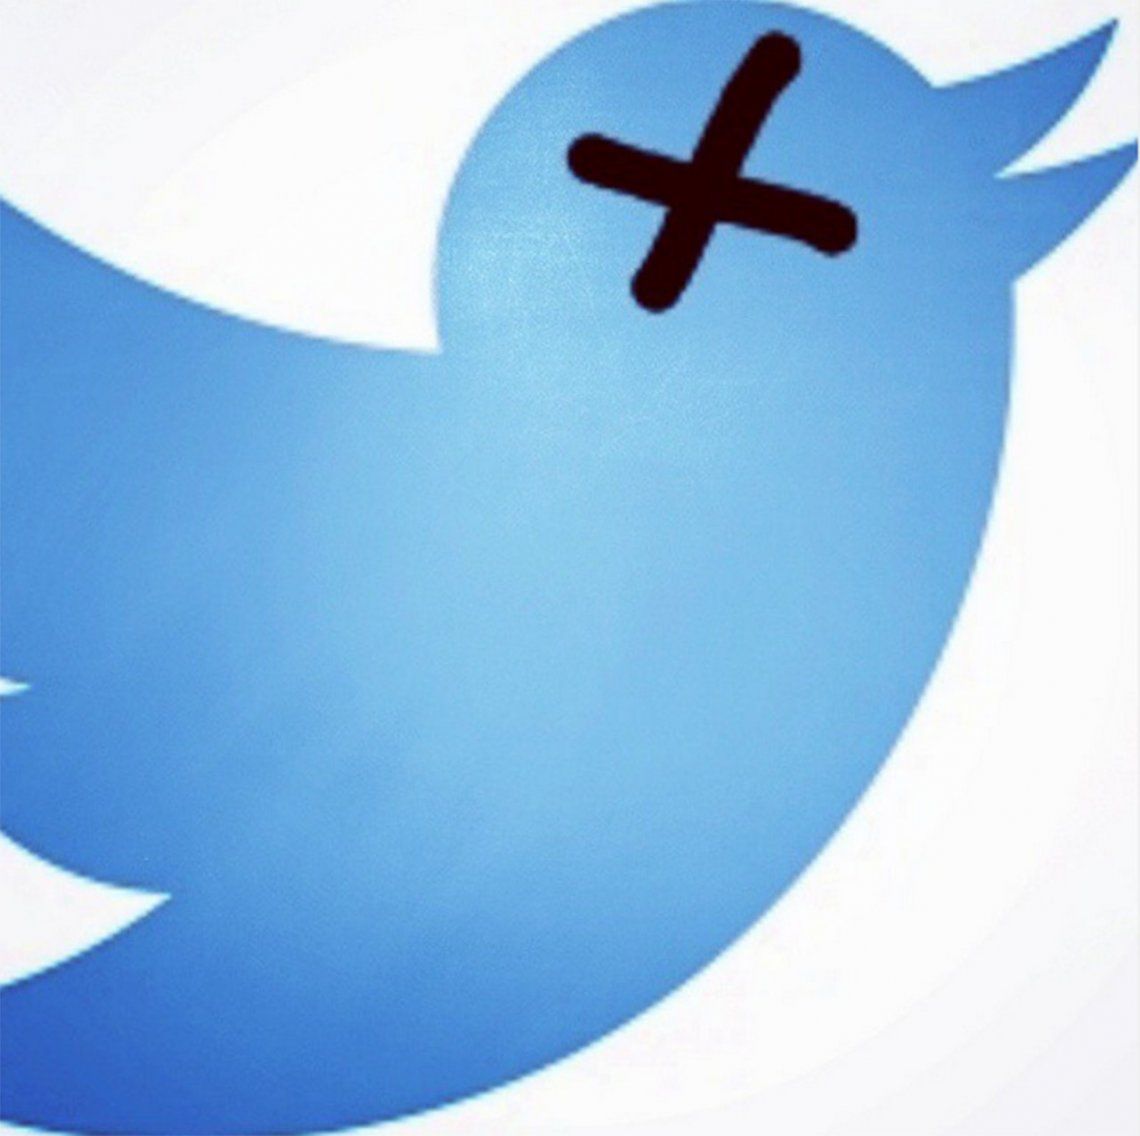 Twitter descubre un problema de seguridad con el que pueden robarte la cuenta y llama a actualizar la aplicación